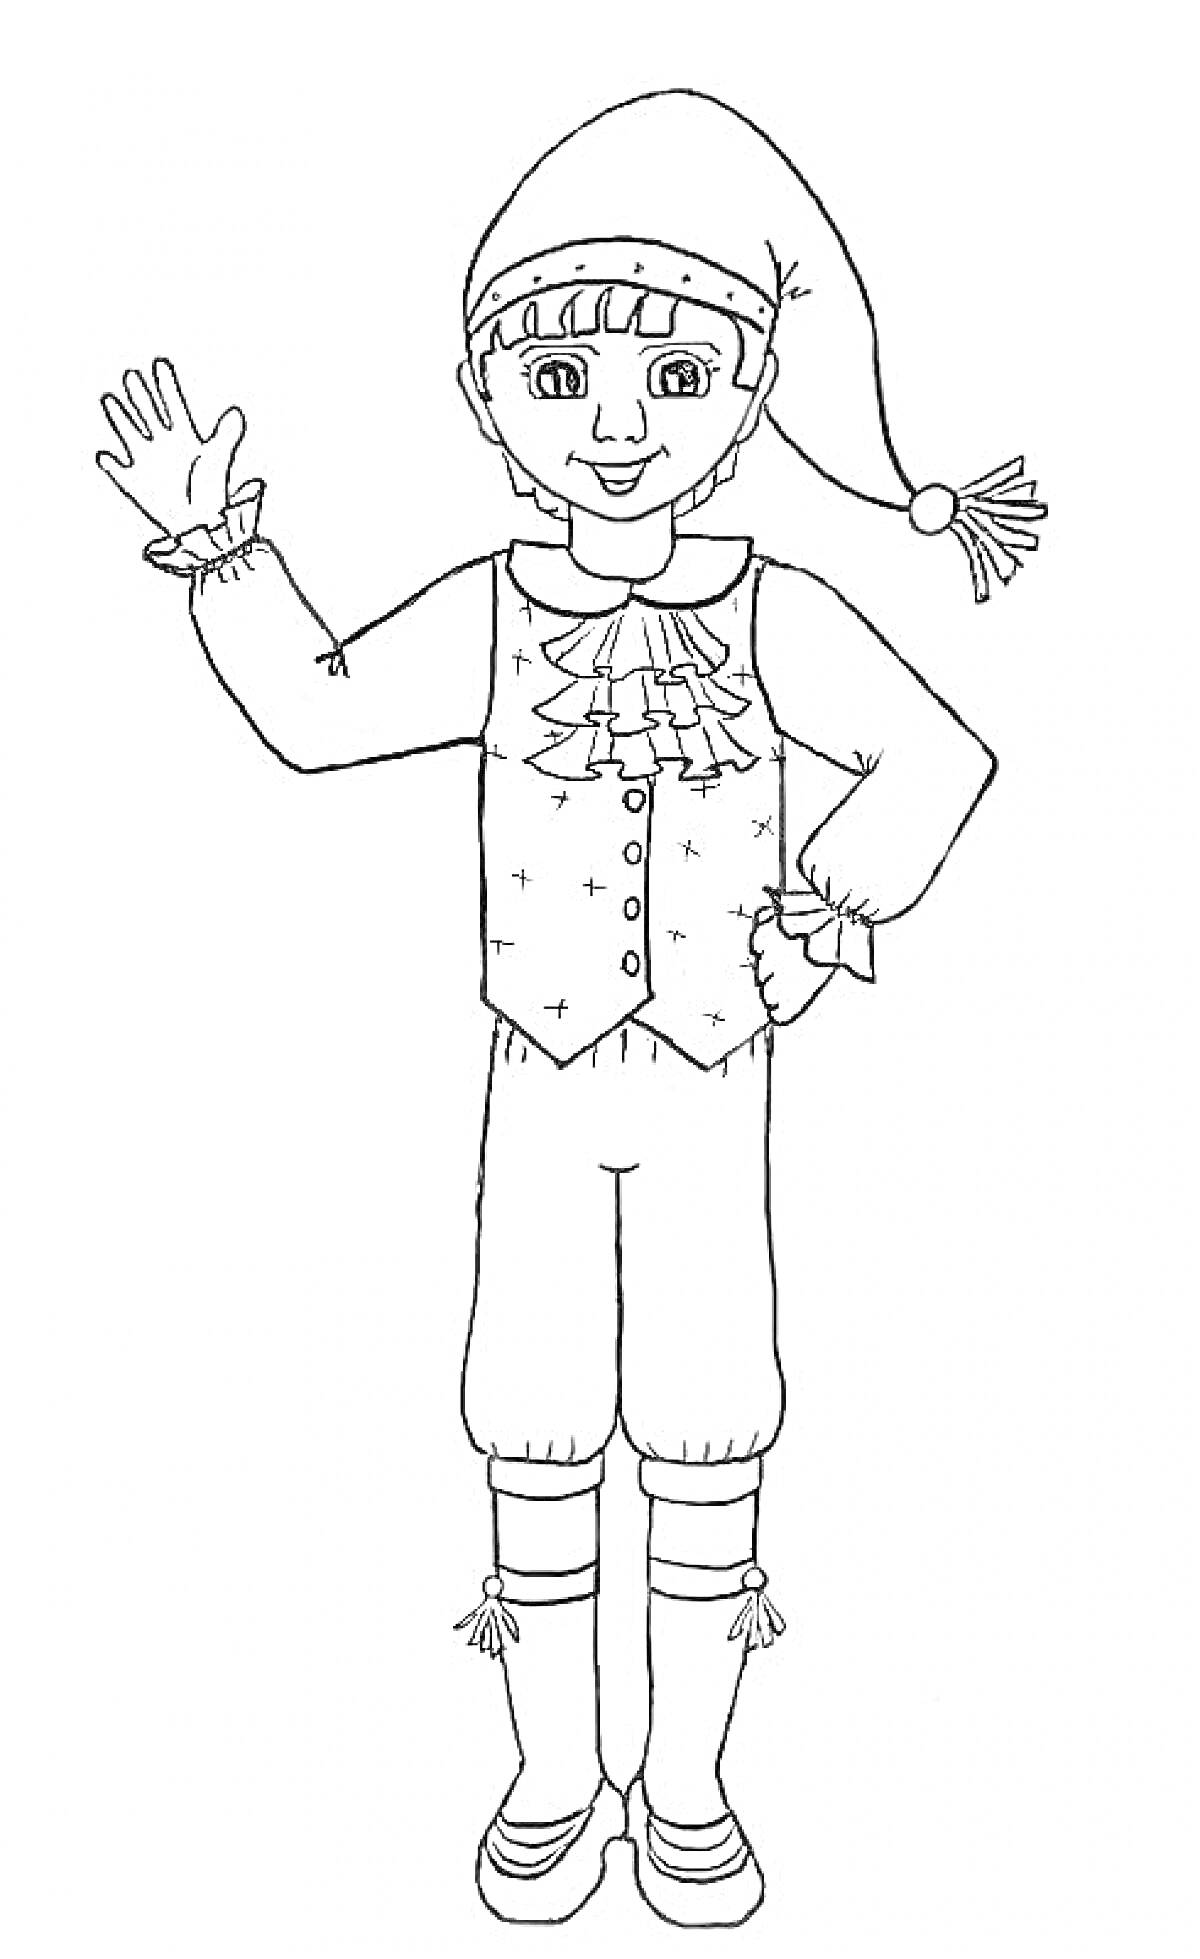 Одетый мальчик в новогоднем костюме с жилетом, брюками, ботинками и шапкой с кисточкой, поднимает руку